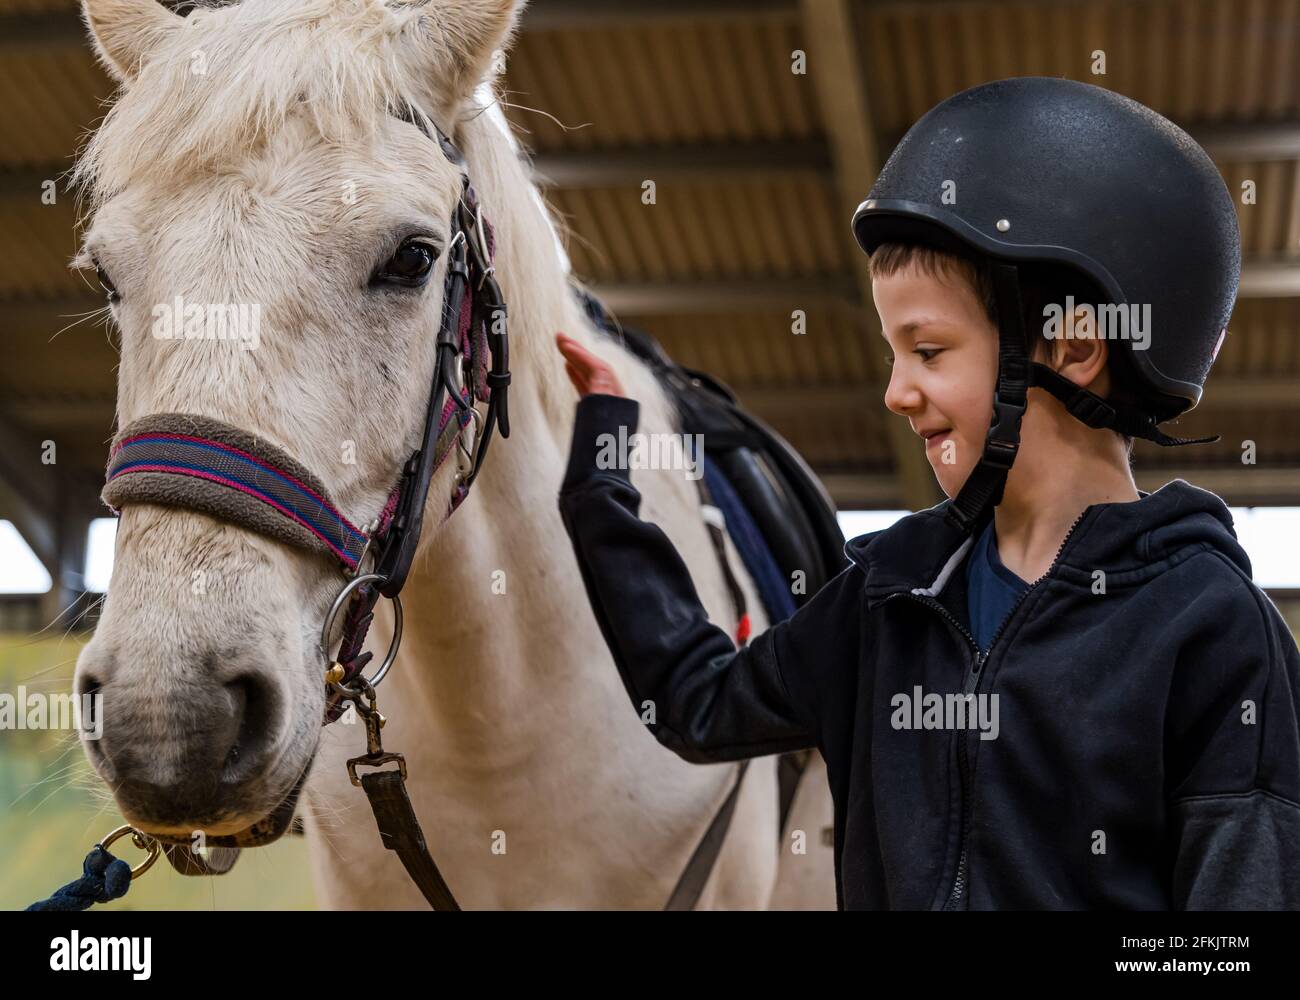 Garçon portant un chapeau d'équitation patting cheval à Riding for Disabled, Muirfield Riding Therapy, East Lothian, Écosse, Royaume-Uni Banque D'Images